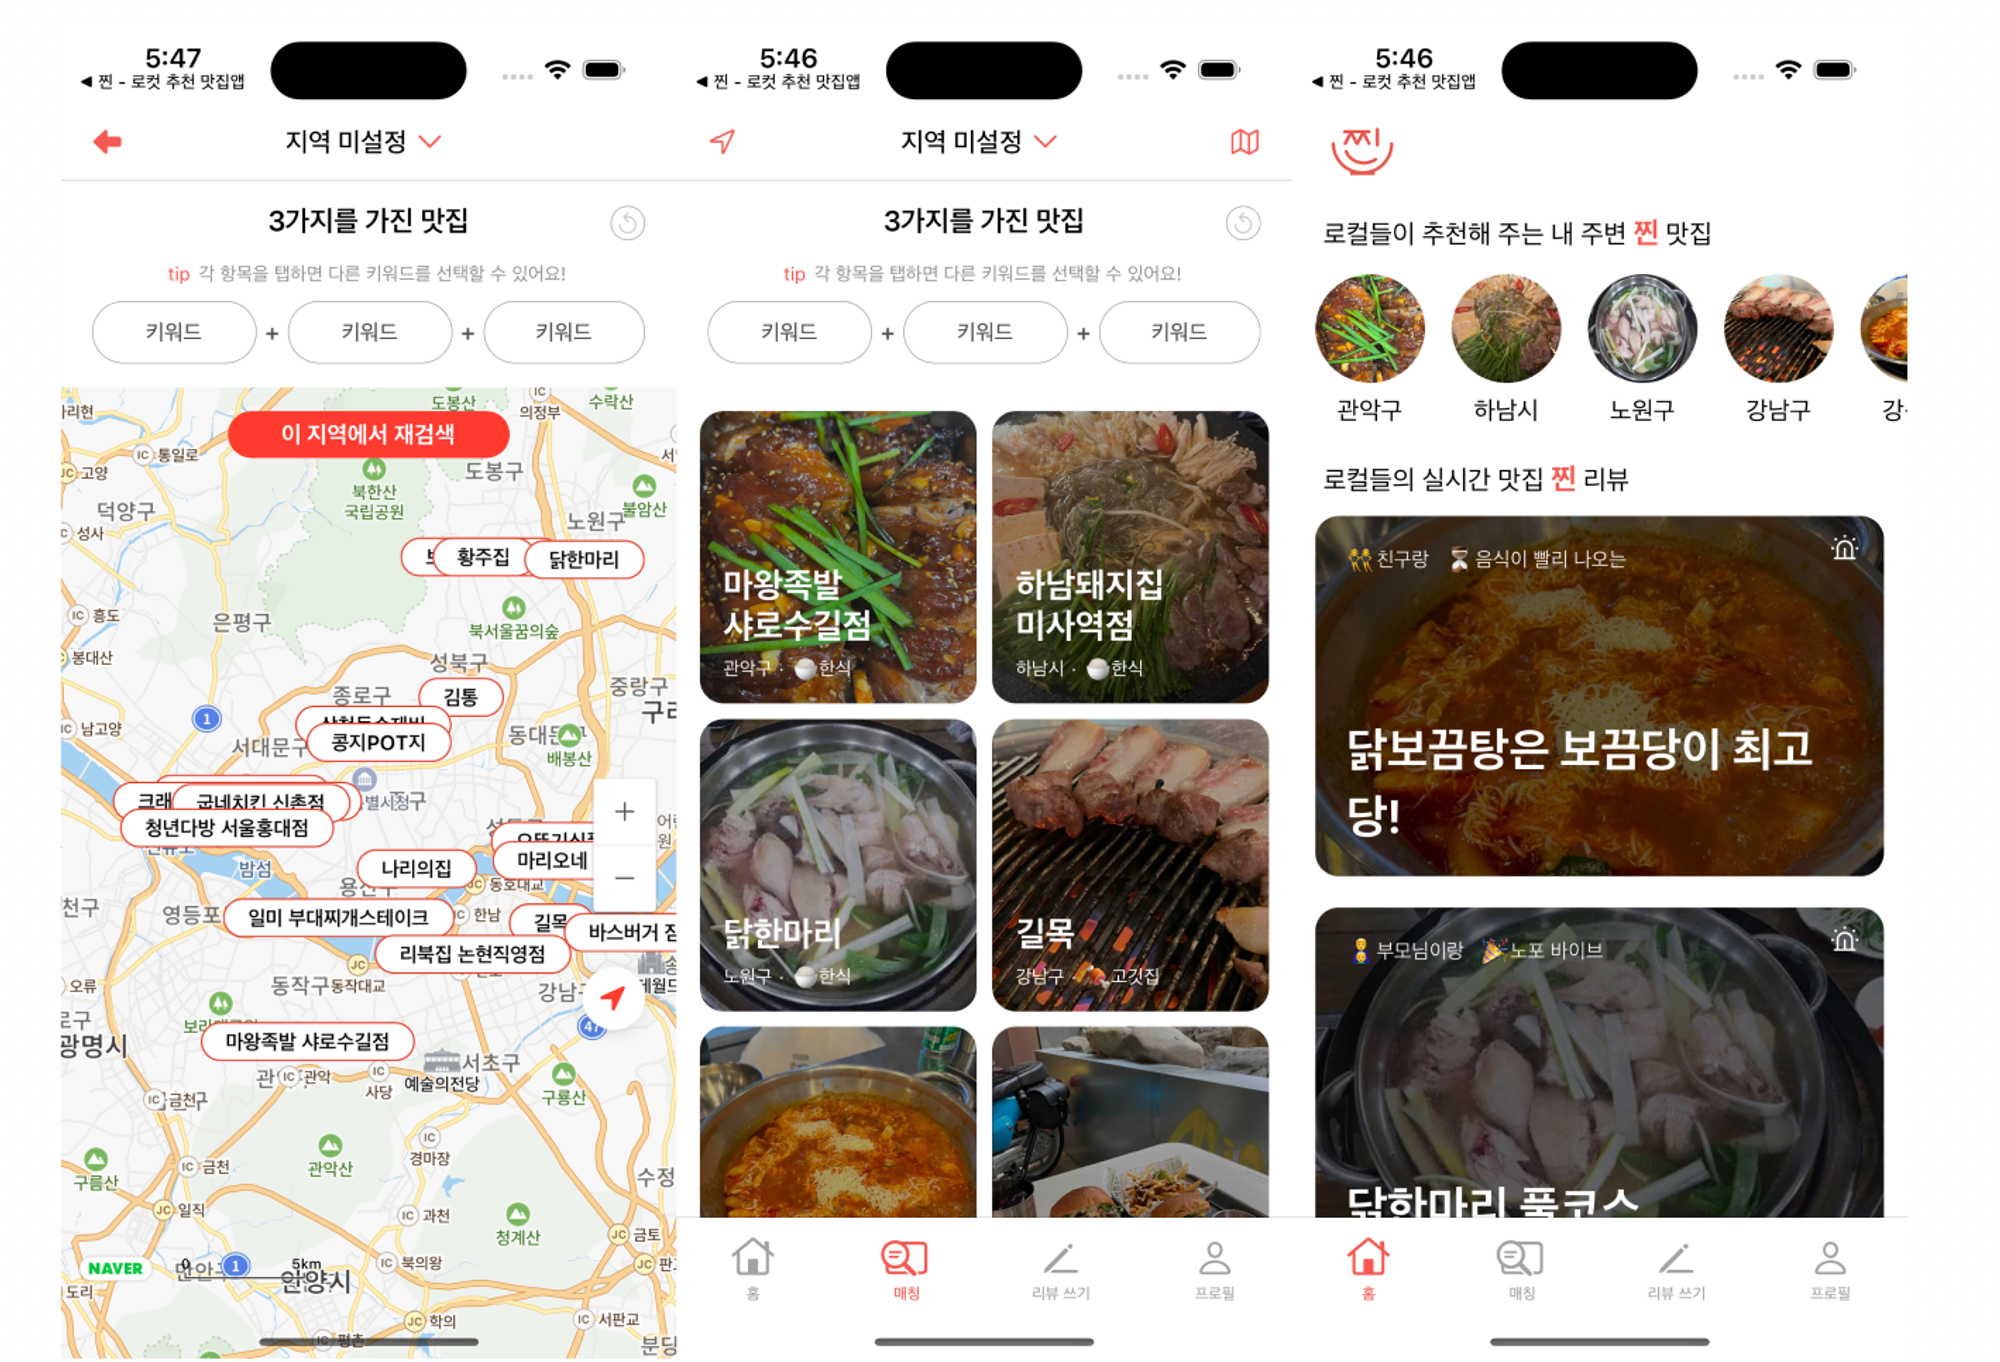 박상우 님이 속한 팀이 내일배움캠프 최종 프로젝트로 완성한 맛집 앱 ‘찐’